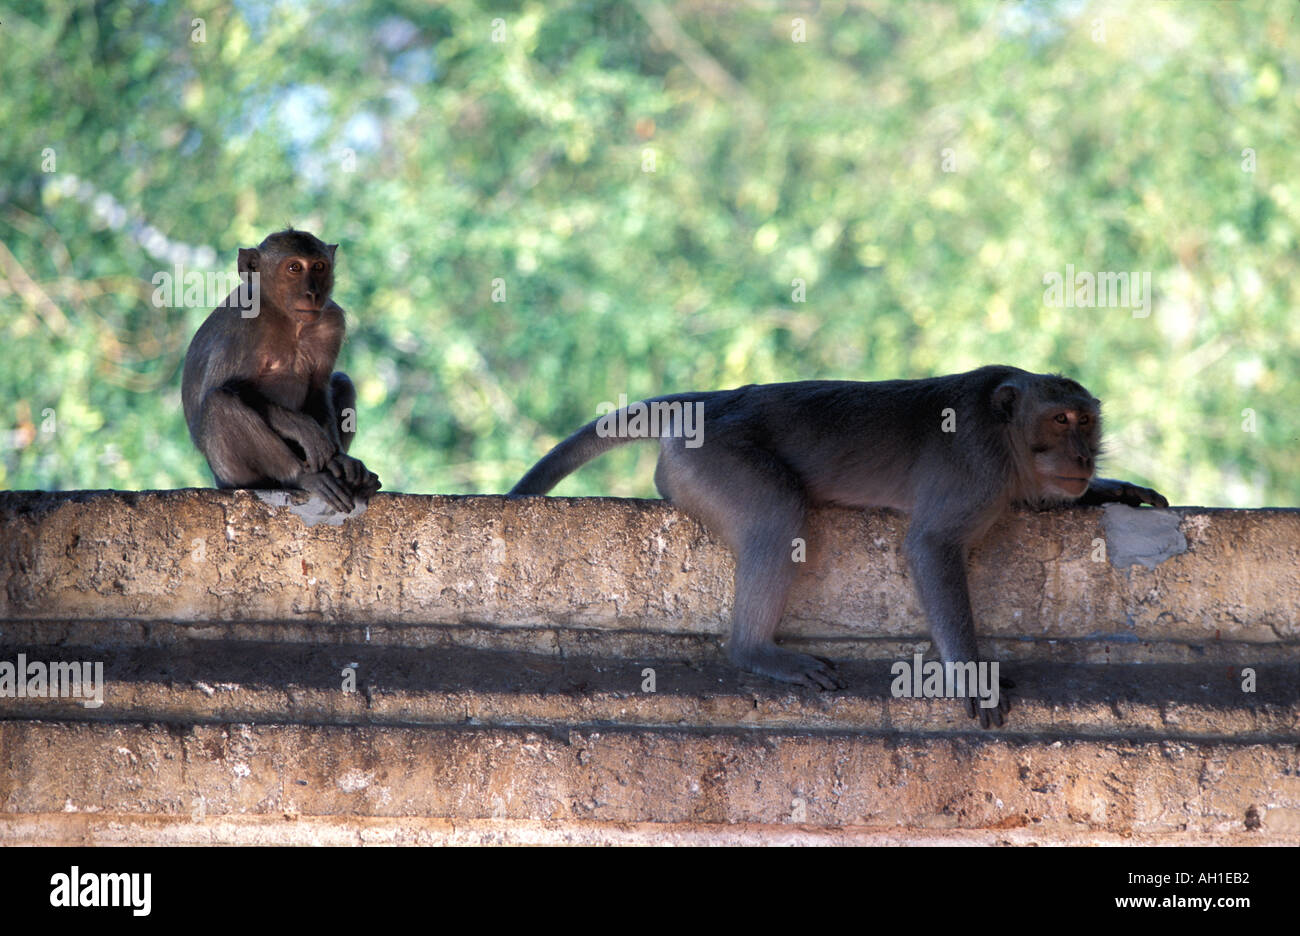 Pulaki tempio di Bali s N costa è un importante luogo di pellegrinaggio e durante la corsa con le scimmie Foto Stock